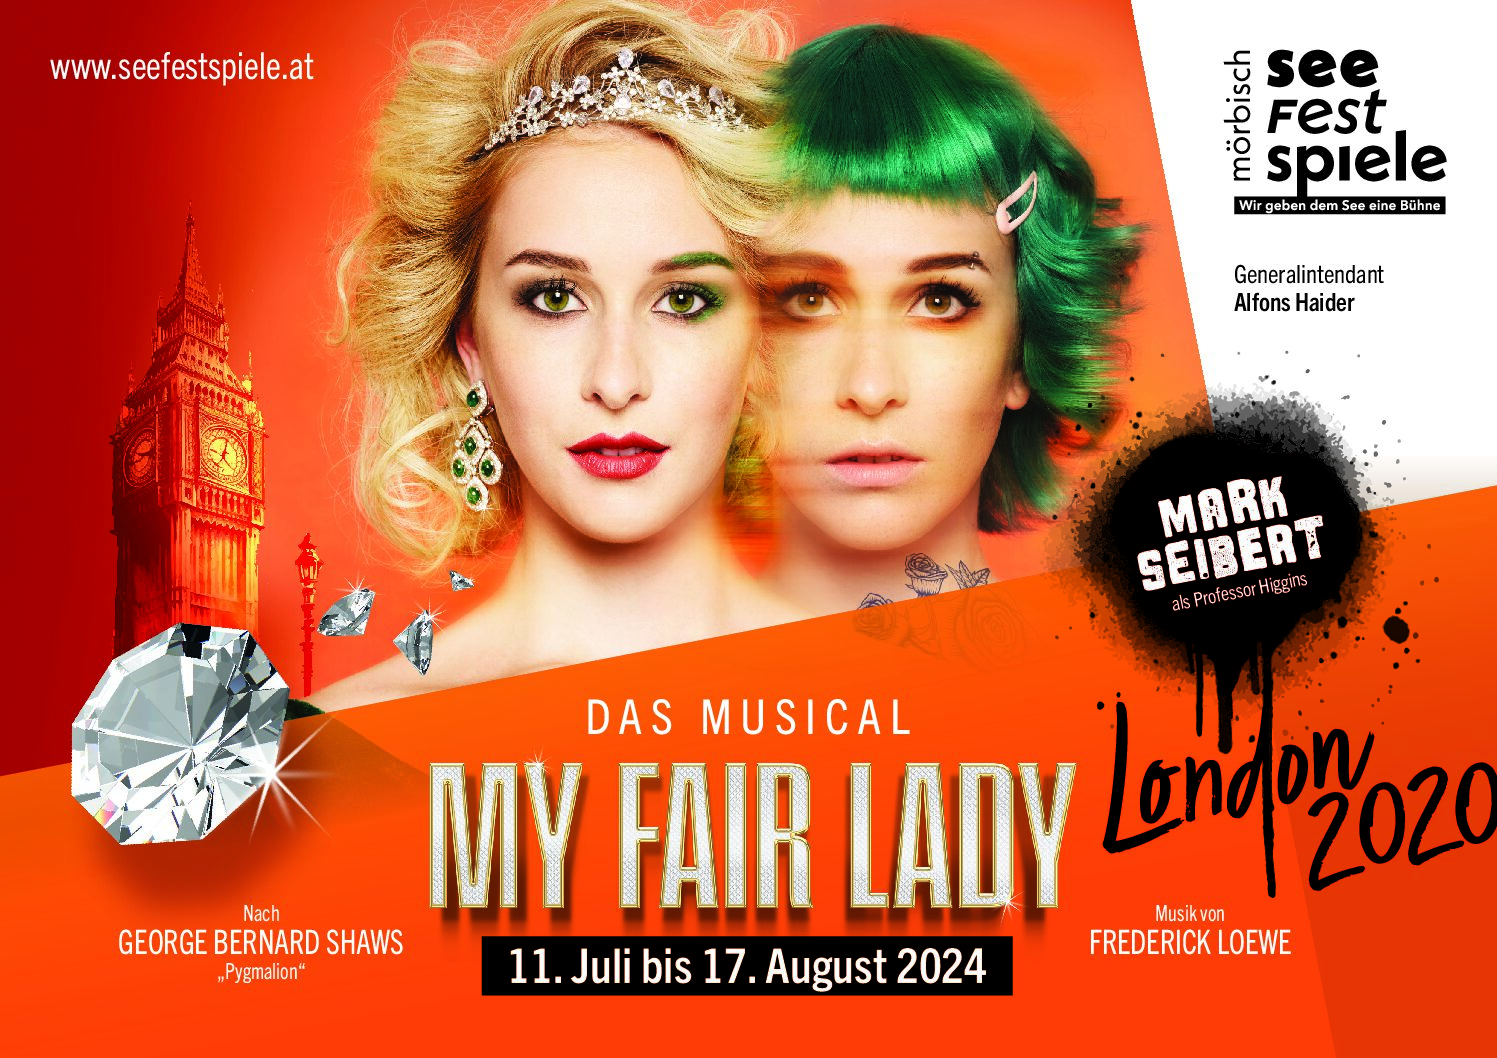 Busreise nach Mörbisch zu "My Fair Lady-Das Musical"